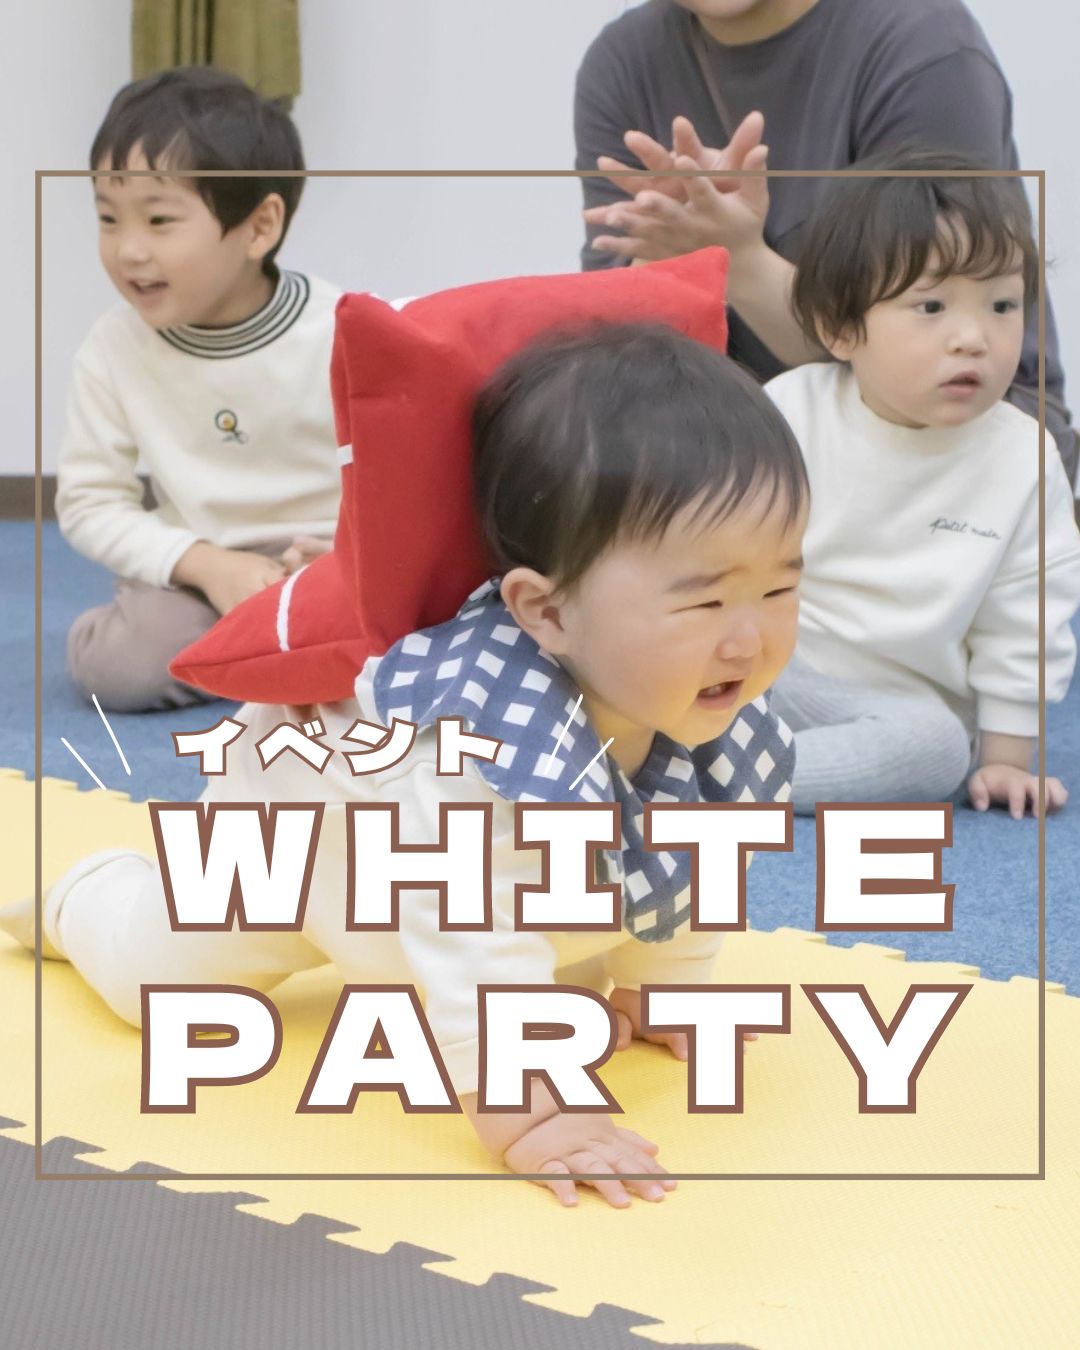 第2回 White party開催報告